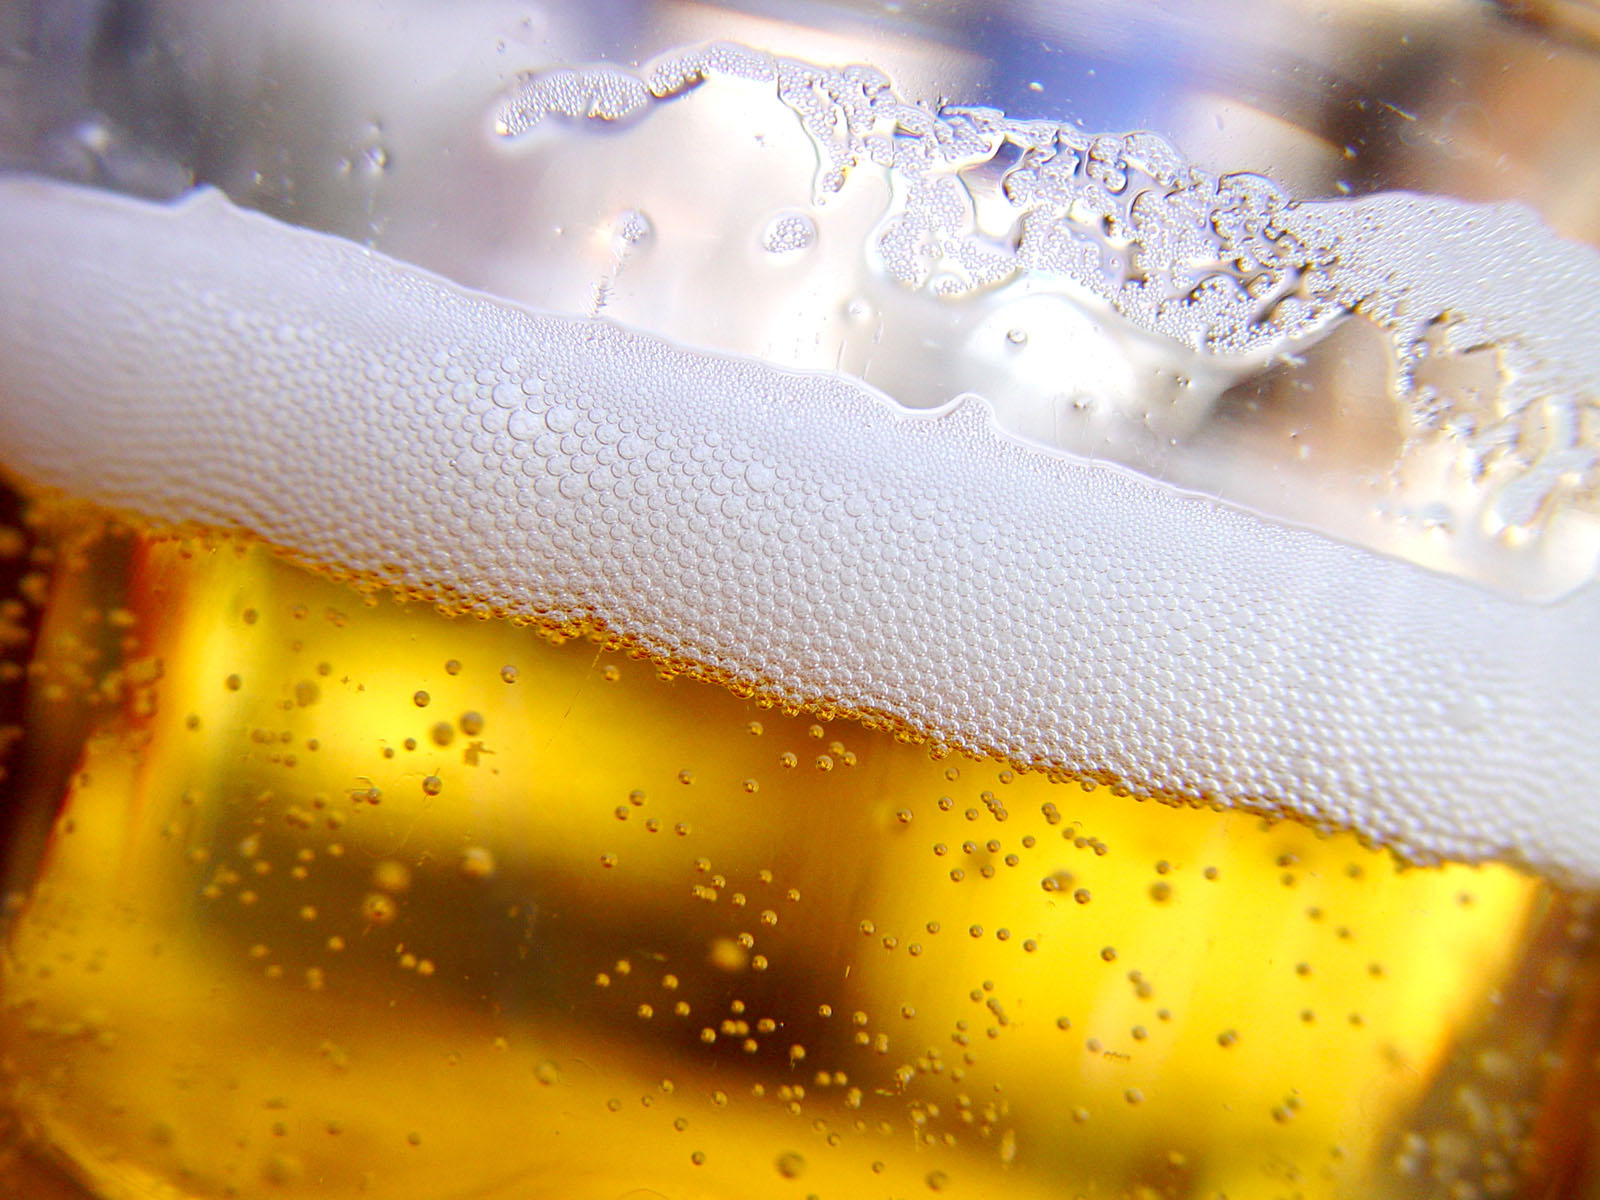 Οι γυναίκες που πίνουν λίγη μπίρα κινδυνεύουν λιγότερο από έμφραγμα